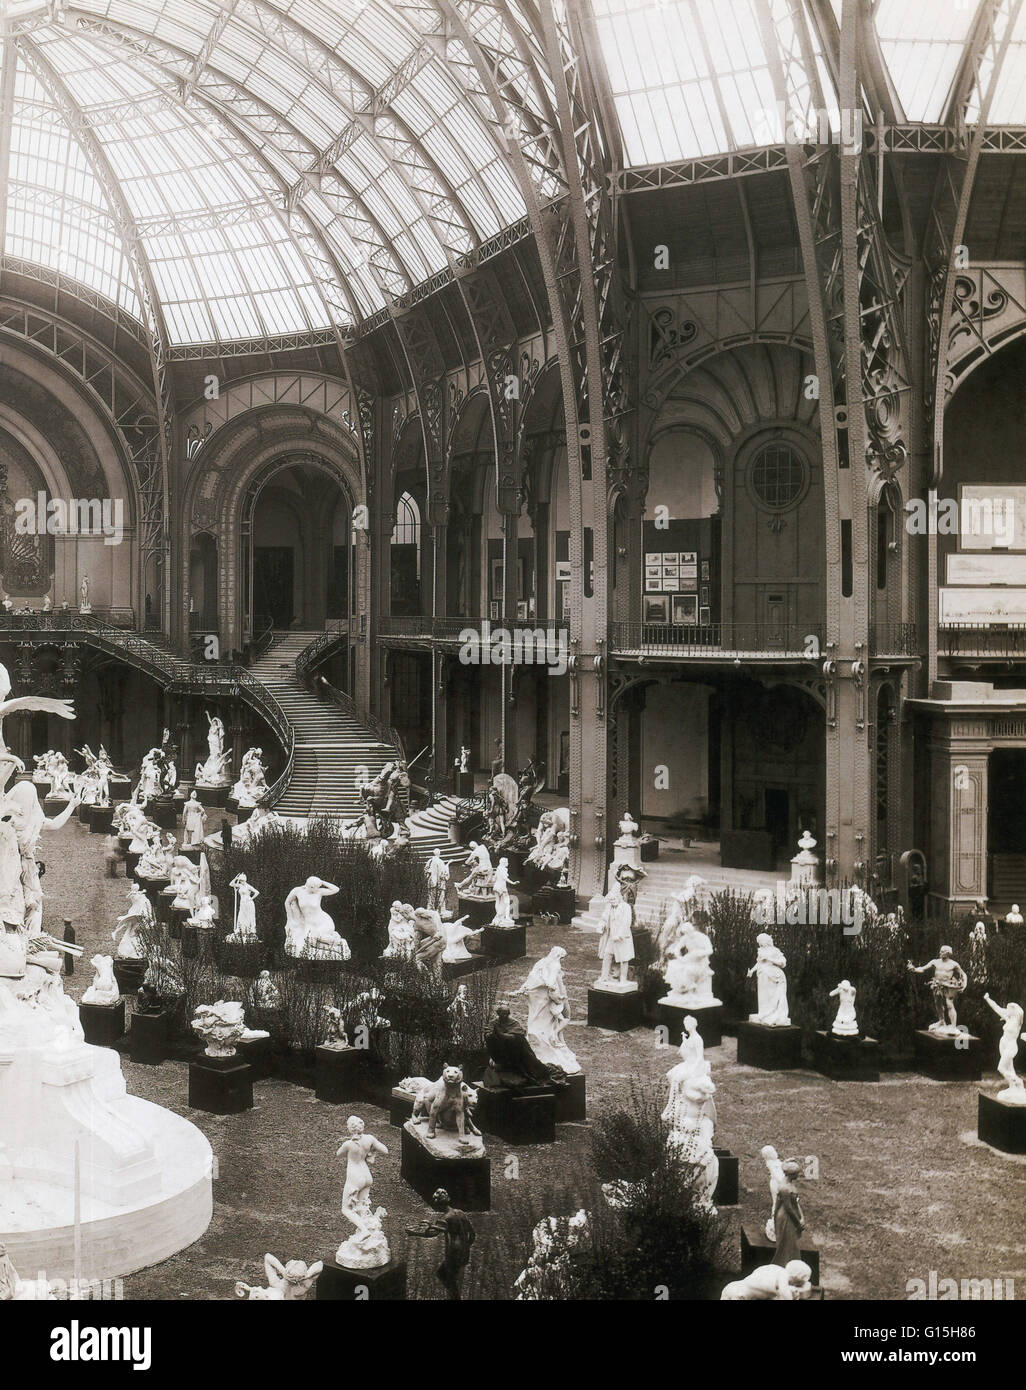 Mostra di scultura presso il Grand Palais. Costruzione del Grand Palais ha iniziato nel 1897 come parte dei lavori di preparazione per l'Esposizione Universale del 1900. Il vano principale quasi 780 piedi lungo, è stato costruito con un ferro da stiro, acciaio e vetro canna-v Foto Stock